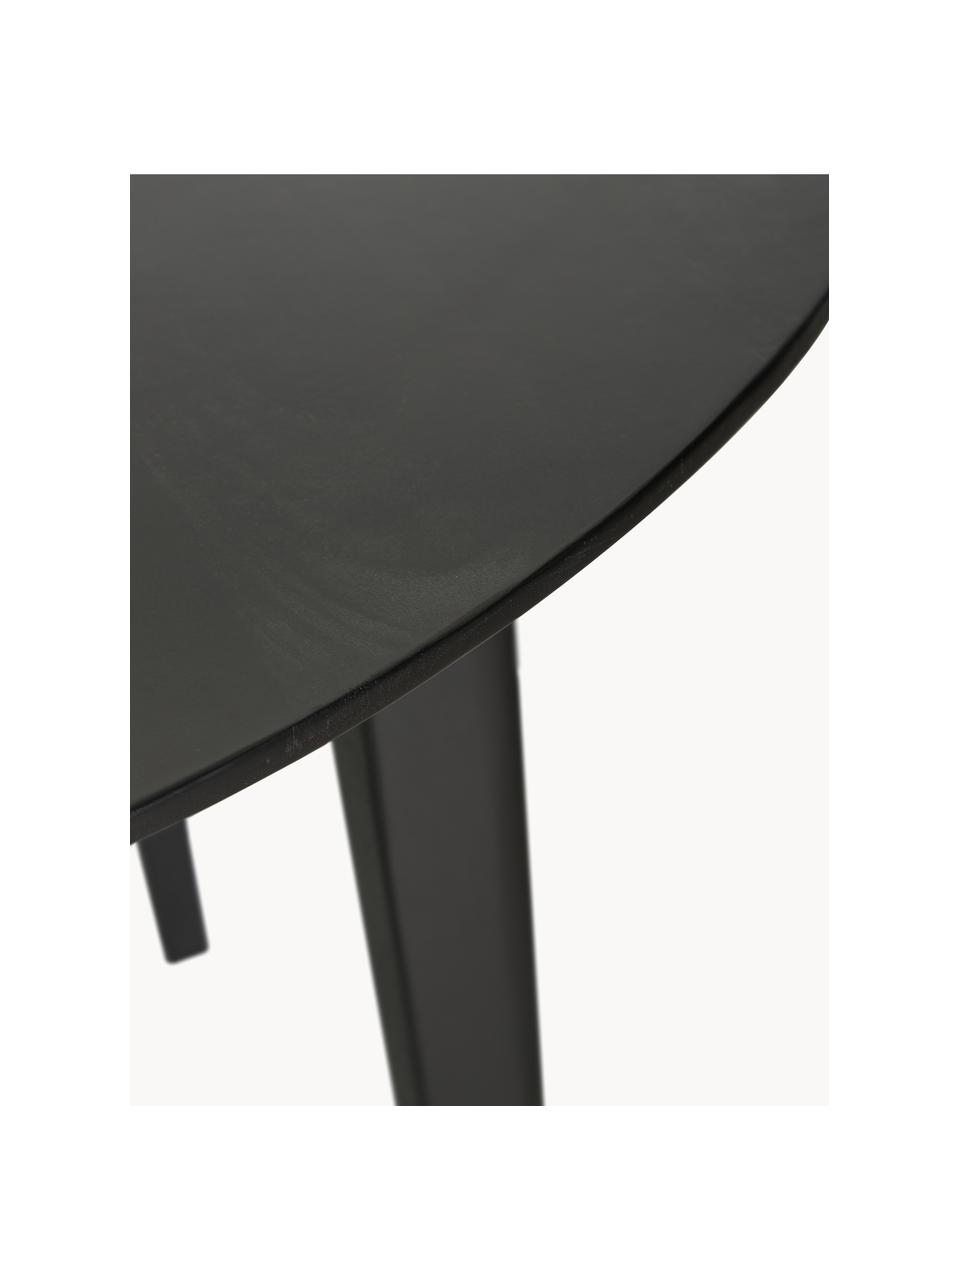 Kulatý jídelní stůl z mangového dřeva Archie, Ø 110 cm, Masivní lakované mangové dřevo

Tento produkt je vyroben z udržitelných zdrojů dřeva s certifikací FSC®., Mangové dřevo, lakované černou barvou, Ø 110 cm, V 75 cm